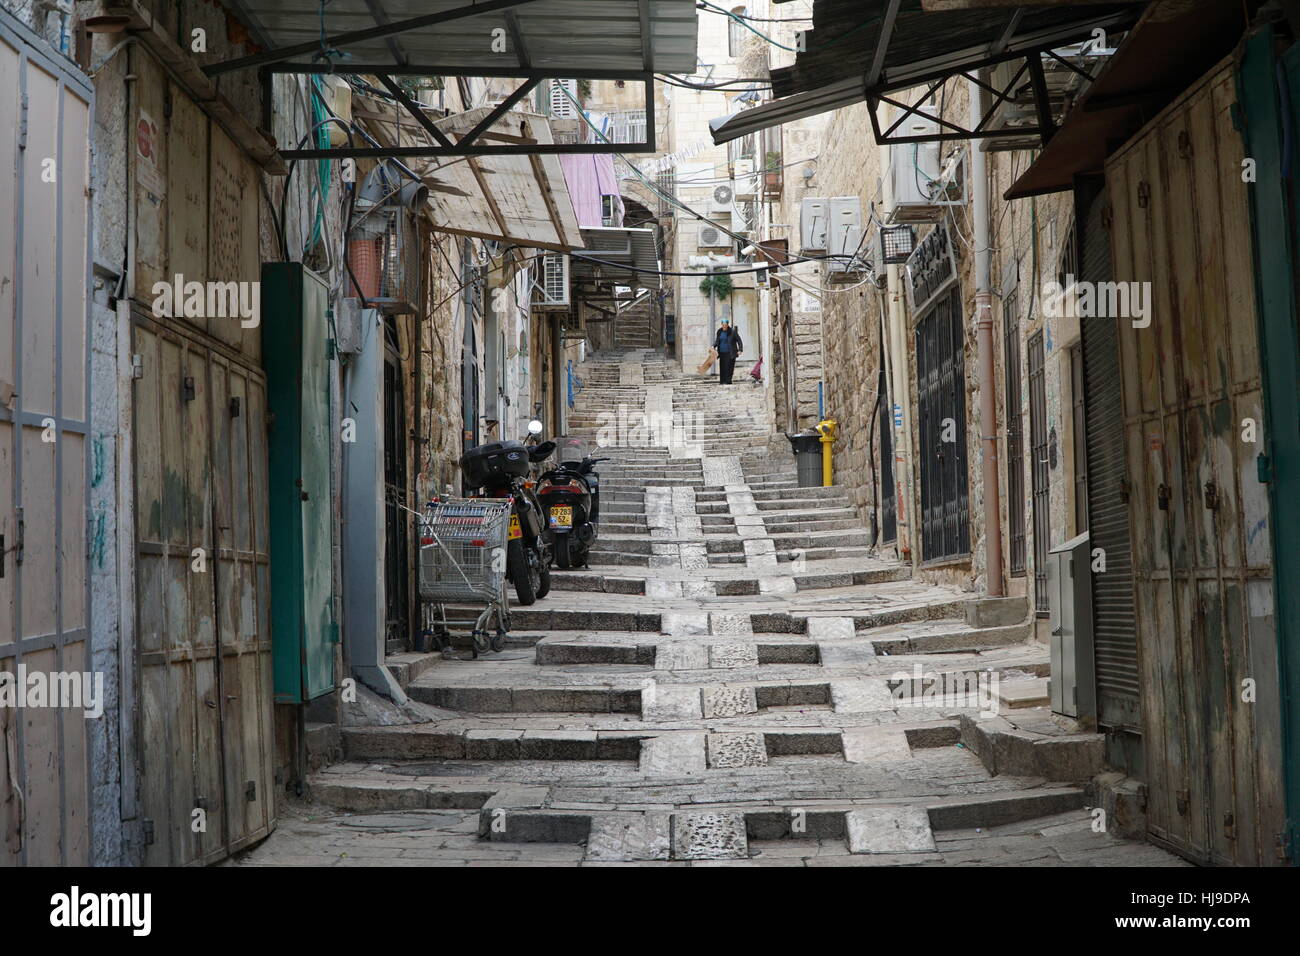 narrow street with steps, Old City of Jerusalem Stock Photo